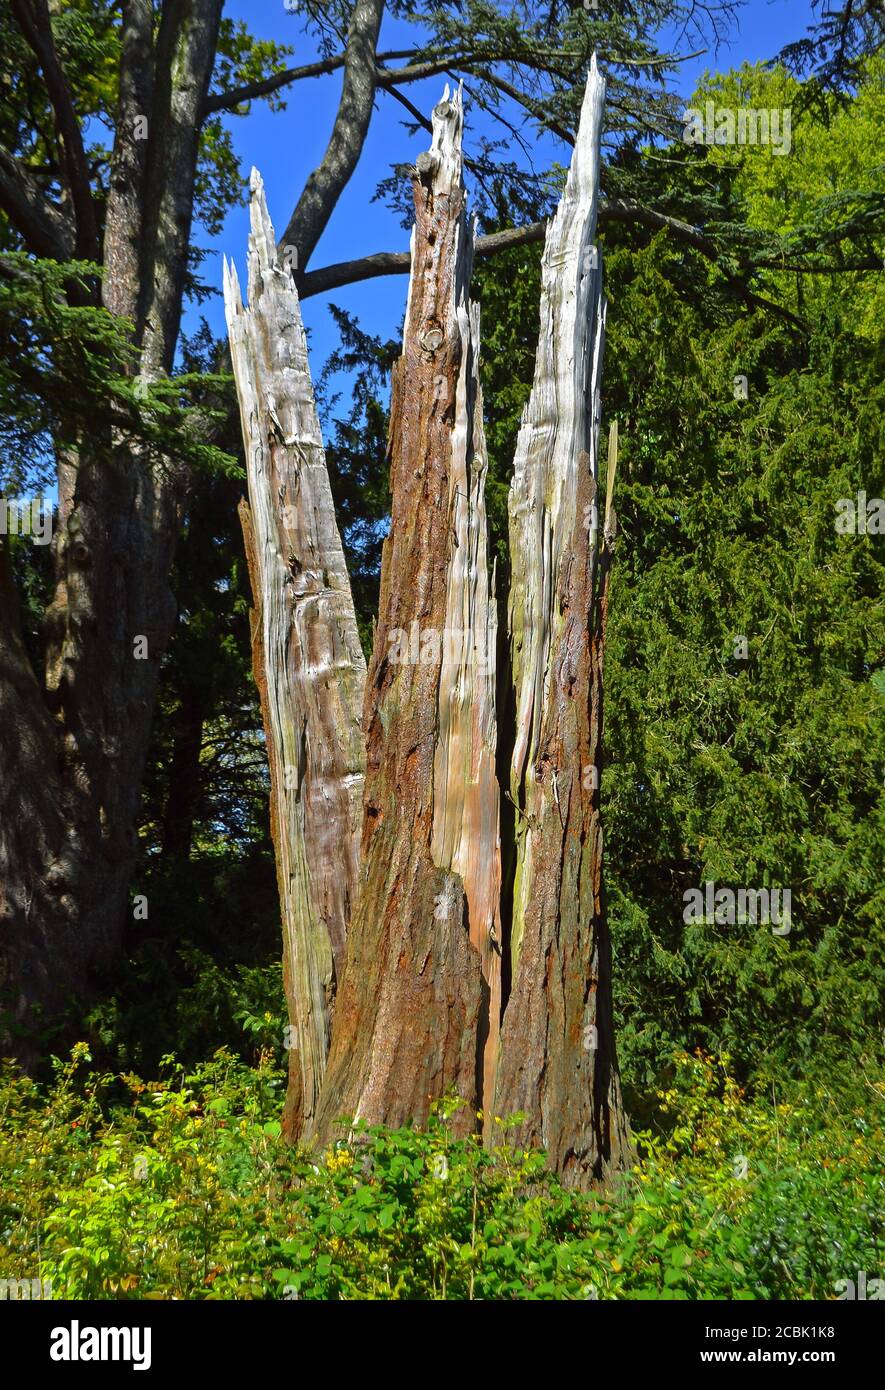 Split tree trunk struck by lightning Stock Photo